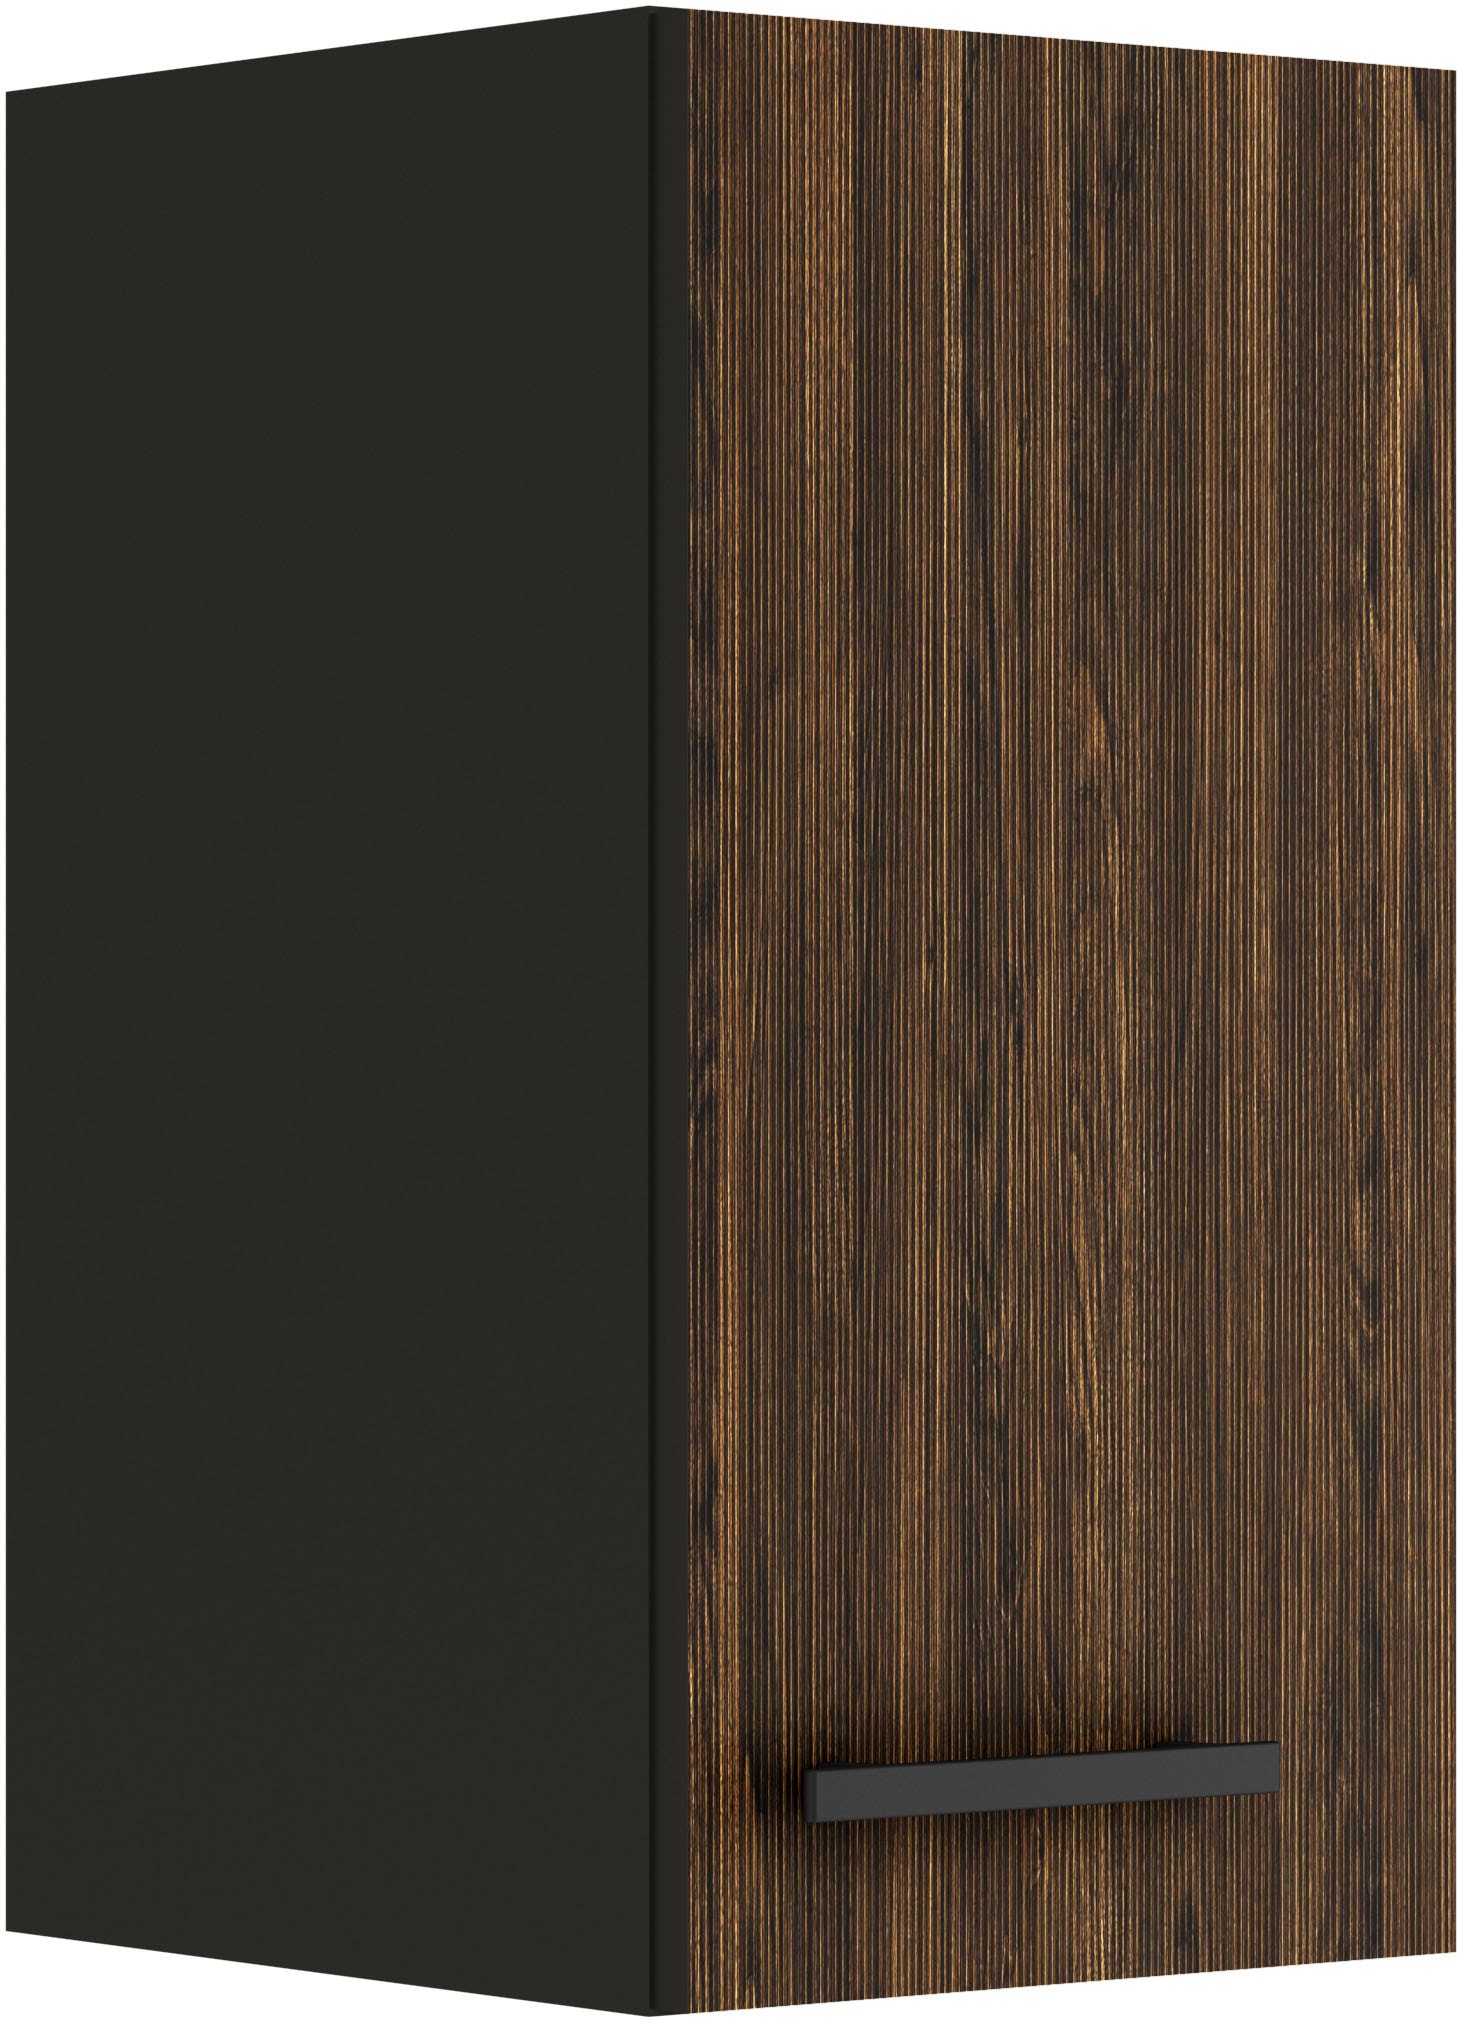 Hängeschrank »Palma«, Breite 30 cm, 1 Tür, 1 Einlegeboden